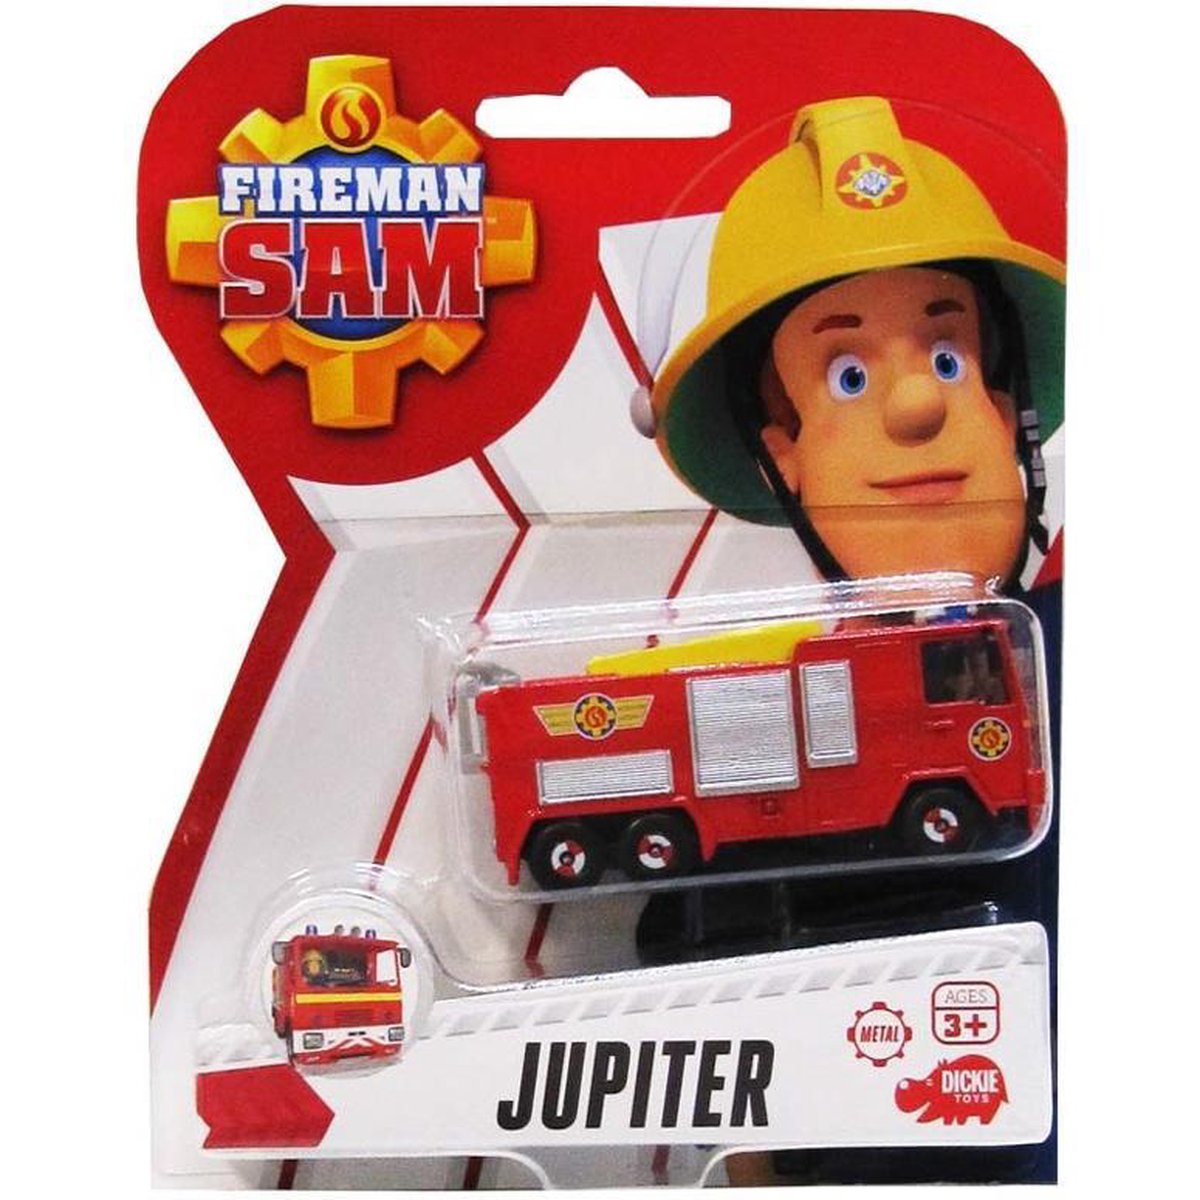 Brandweerman Sam Jupiter Series Pro - Camion de pompier - Véhicule jouet